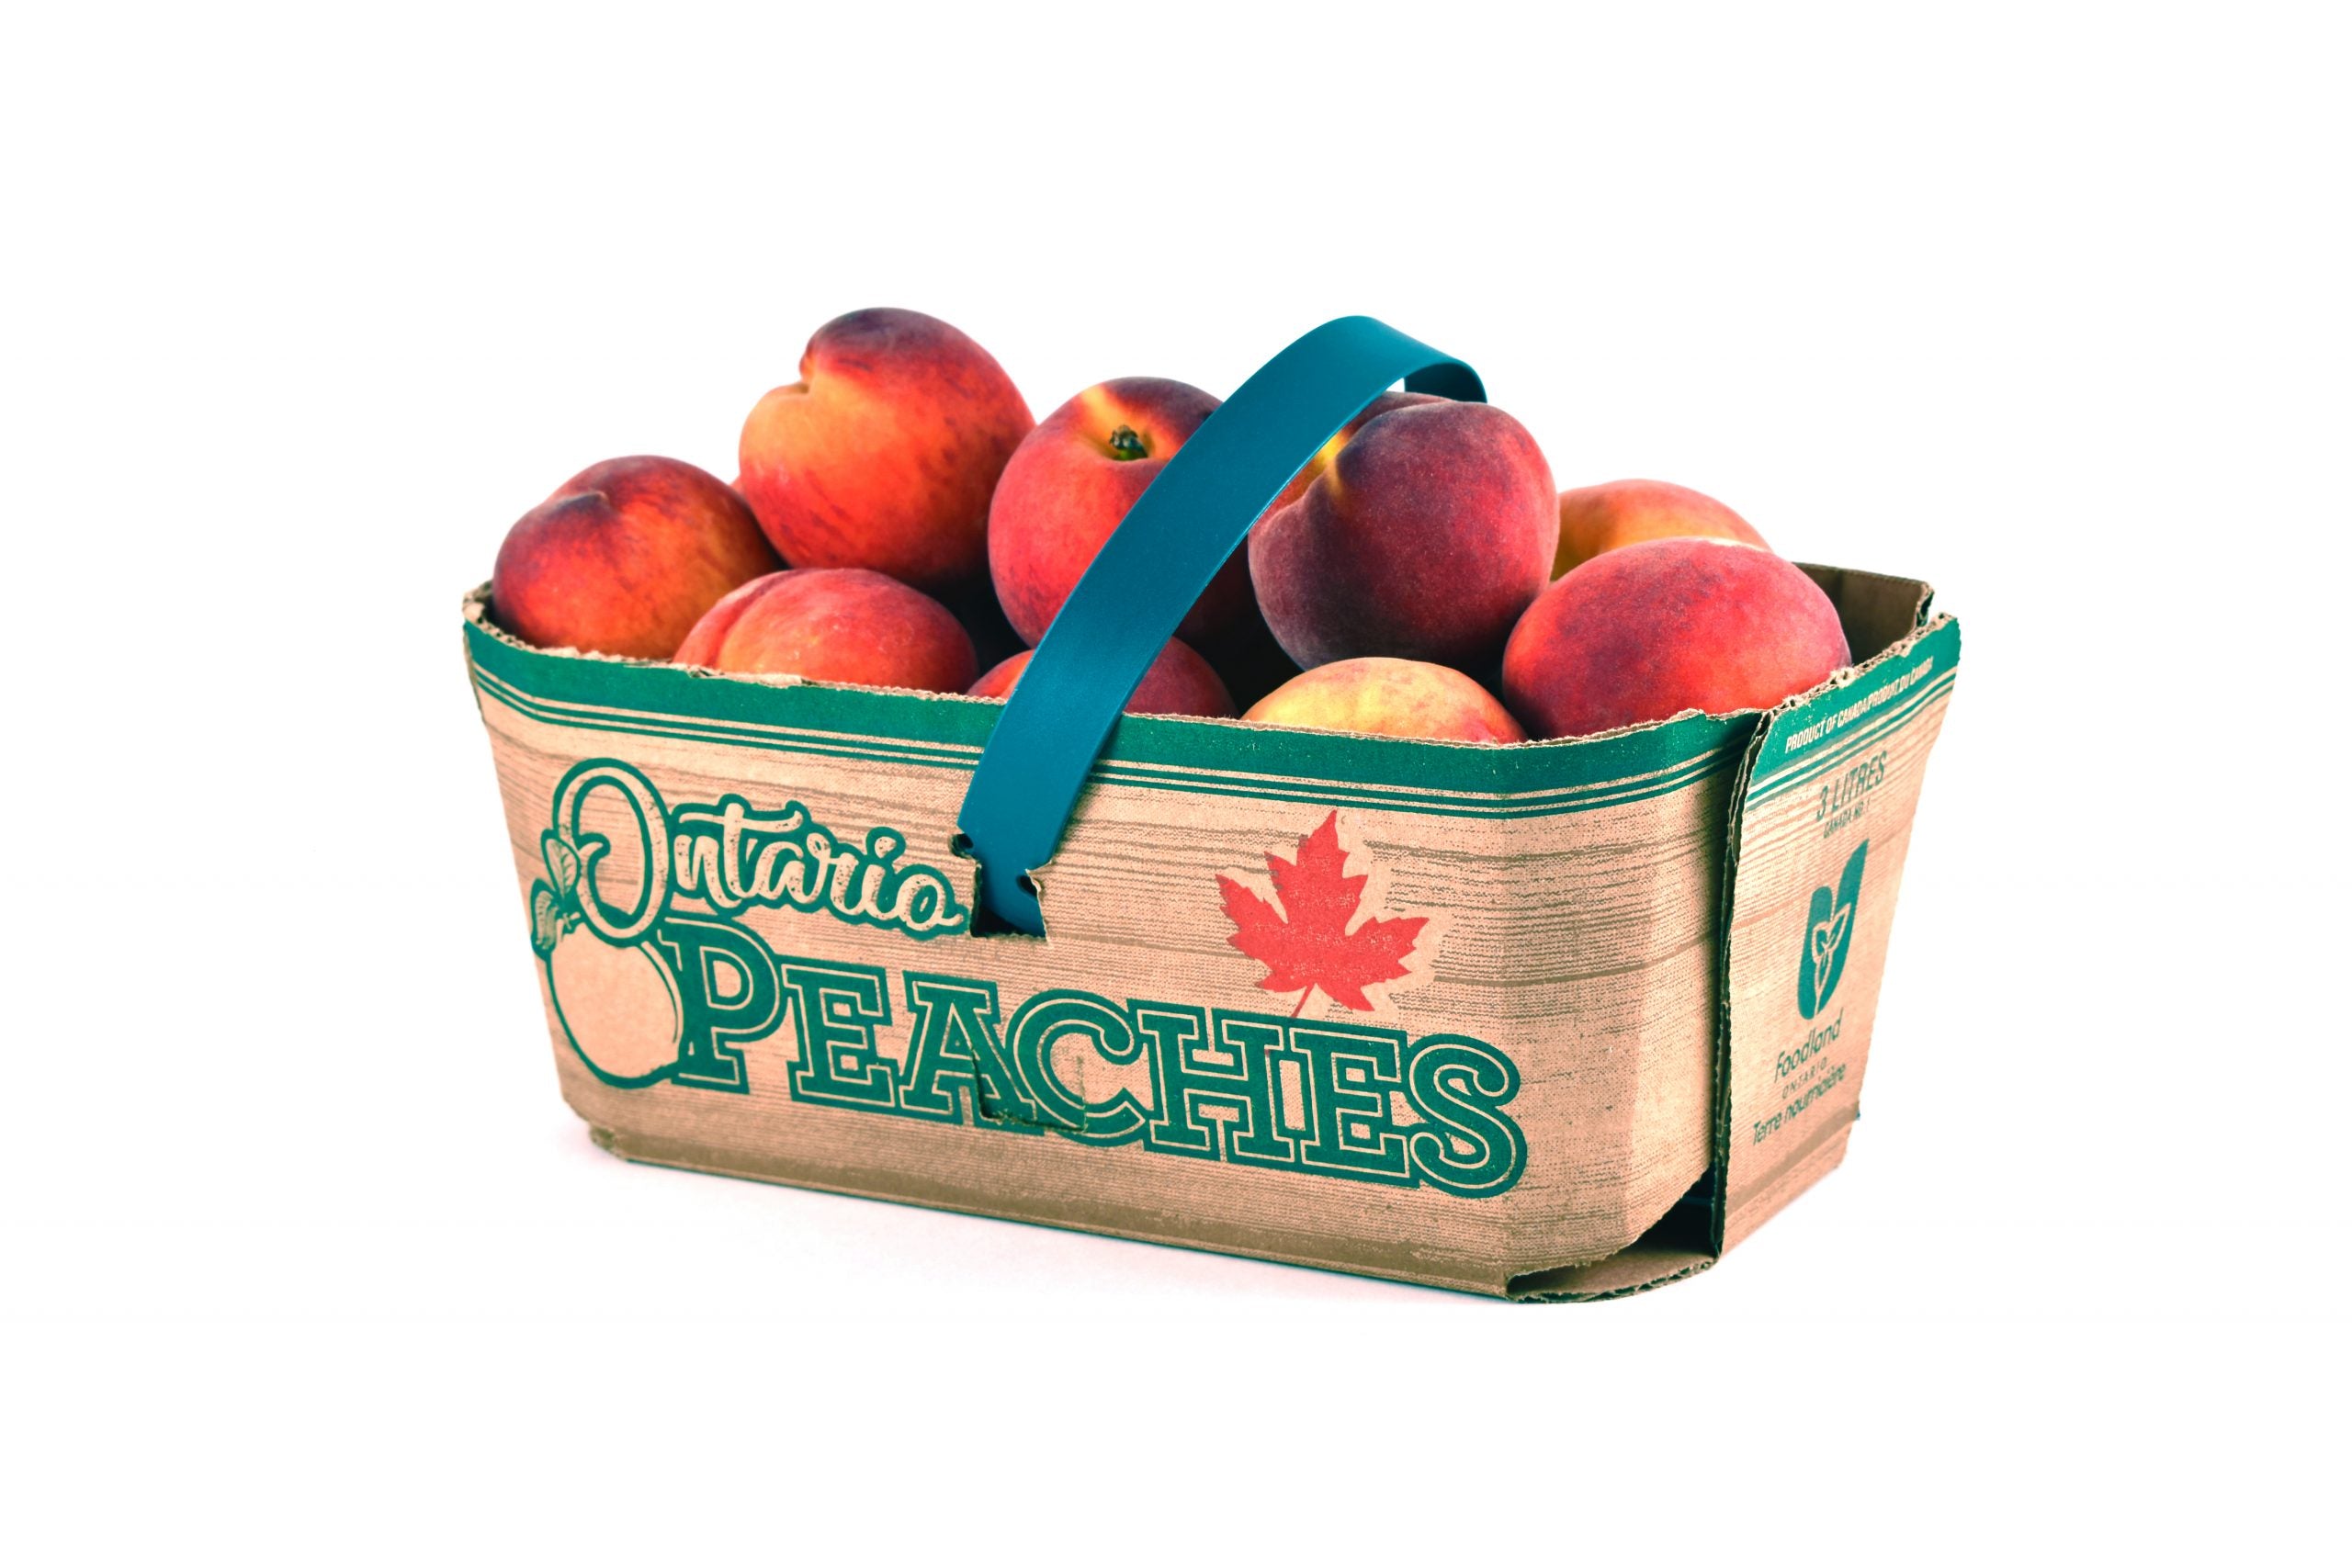 3L - NIAGARA Super SWEET Peaches SPECIAL!